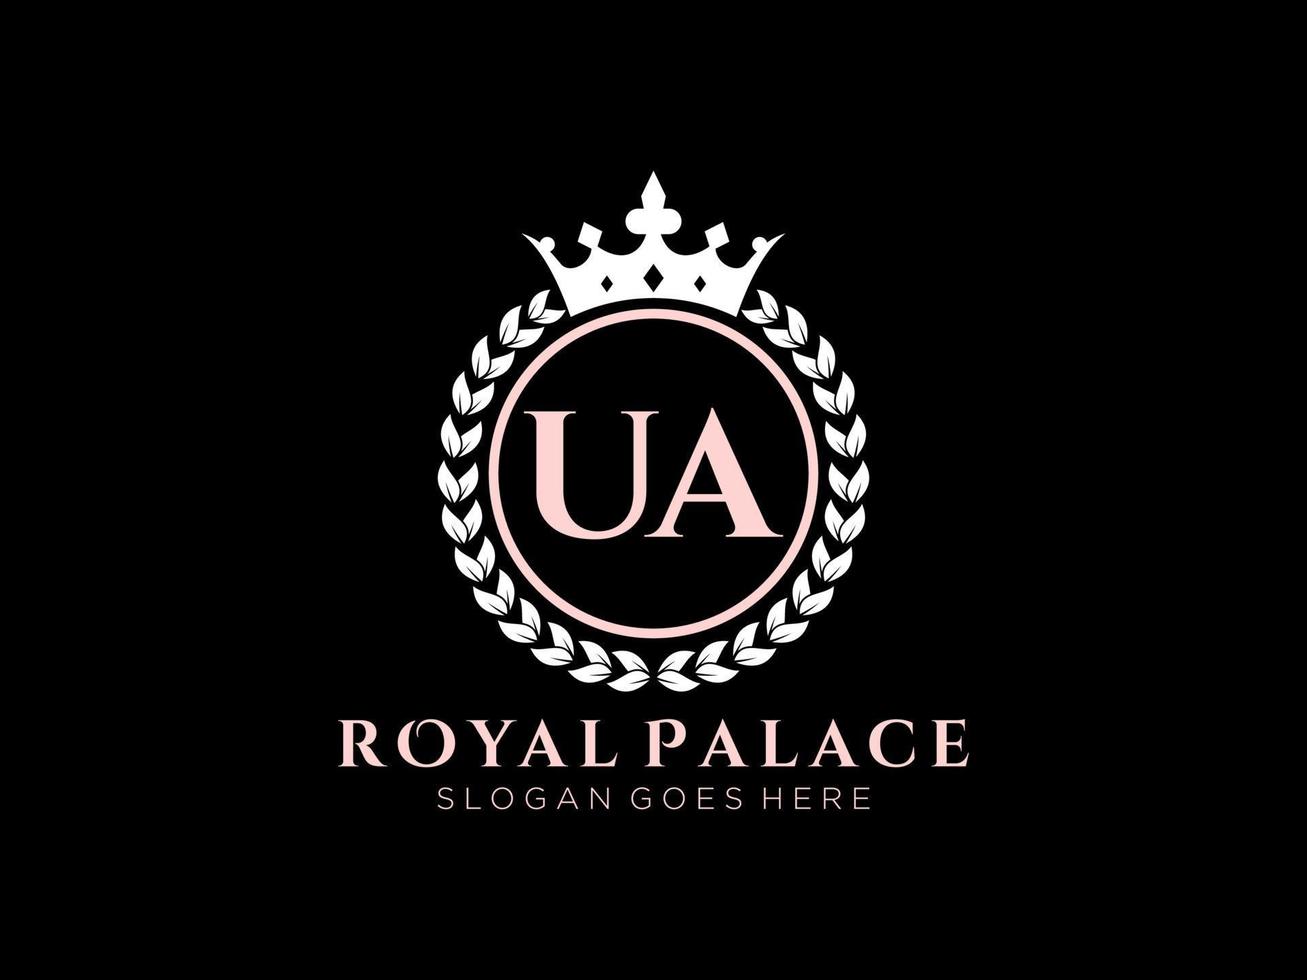 lettre ua logo victorien de luxe royal antique avec cadre ornemental. vecteur